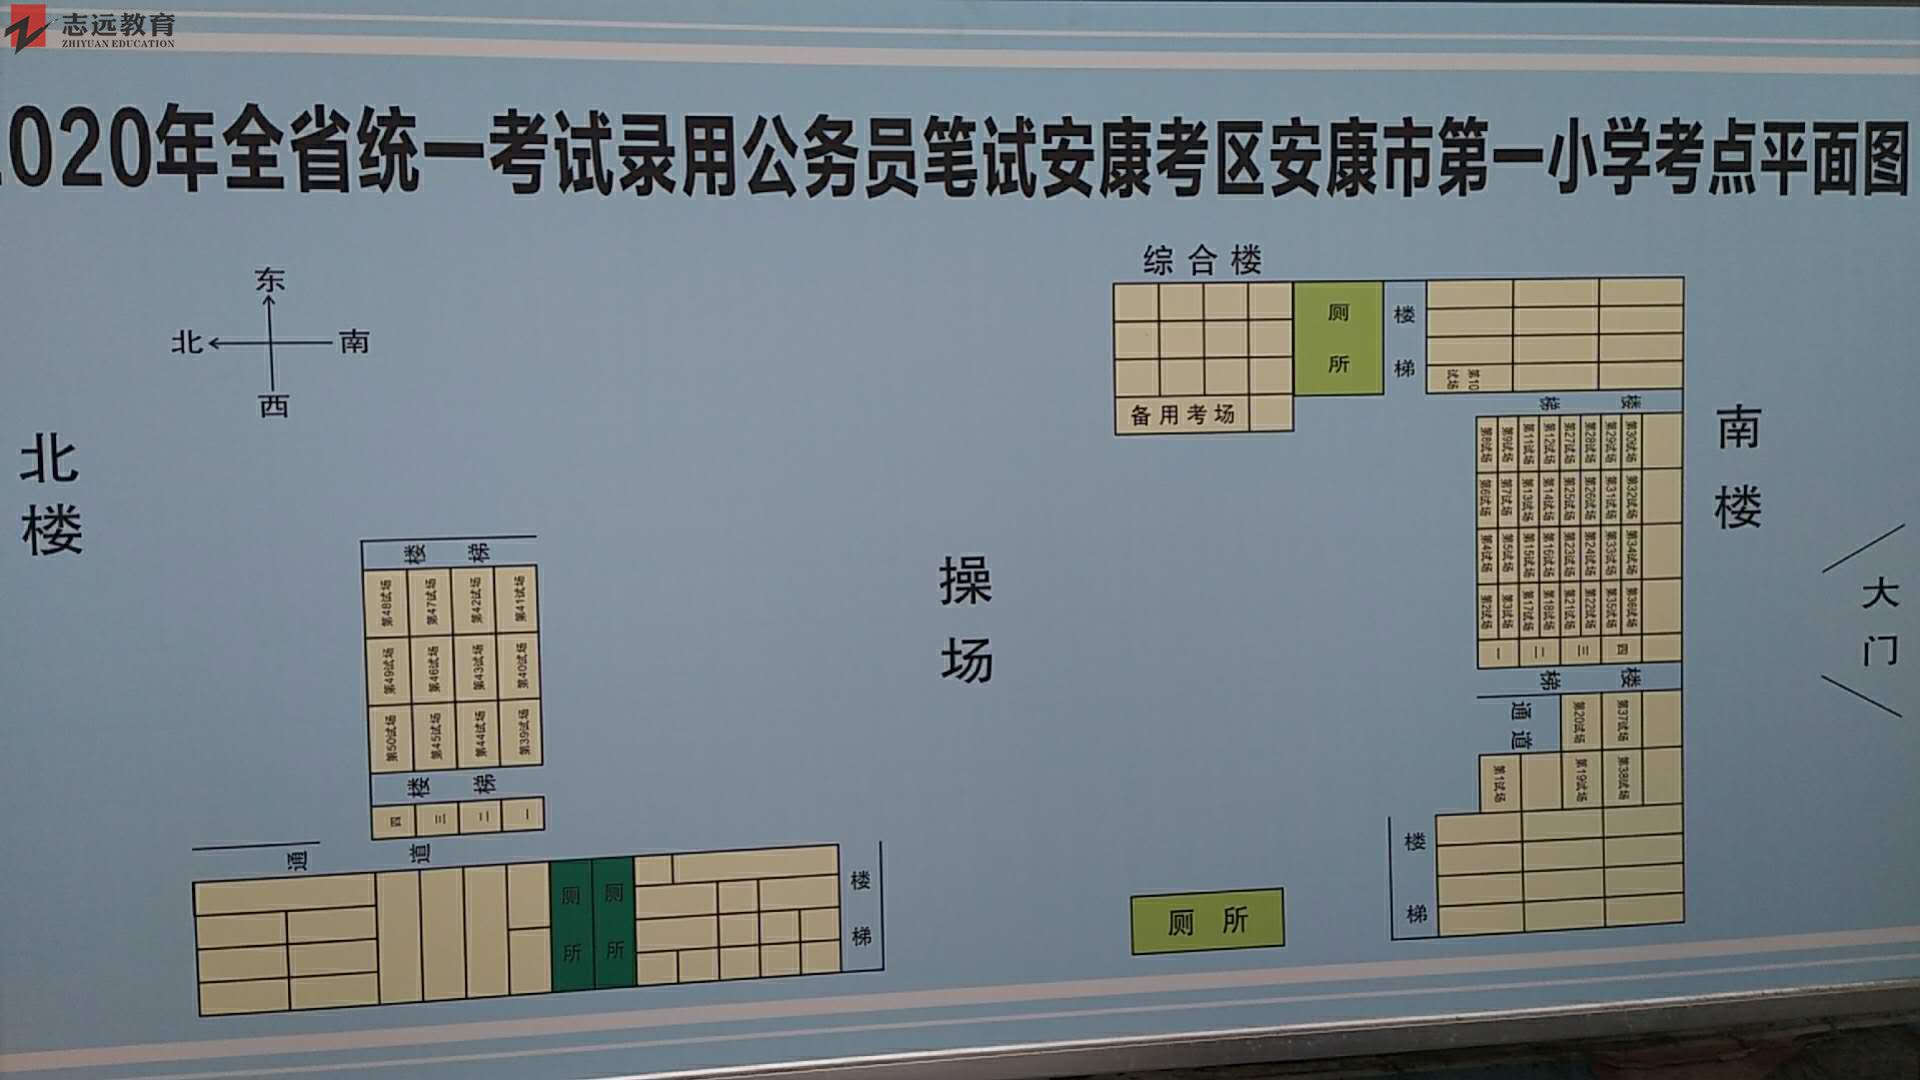 2020陕西公务员考试考点分布图安康考点(安康第一小学)(图1)